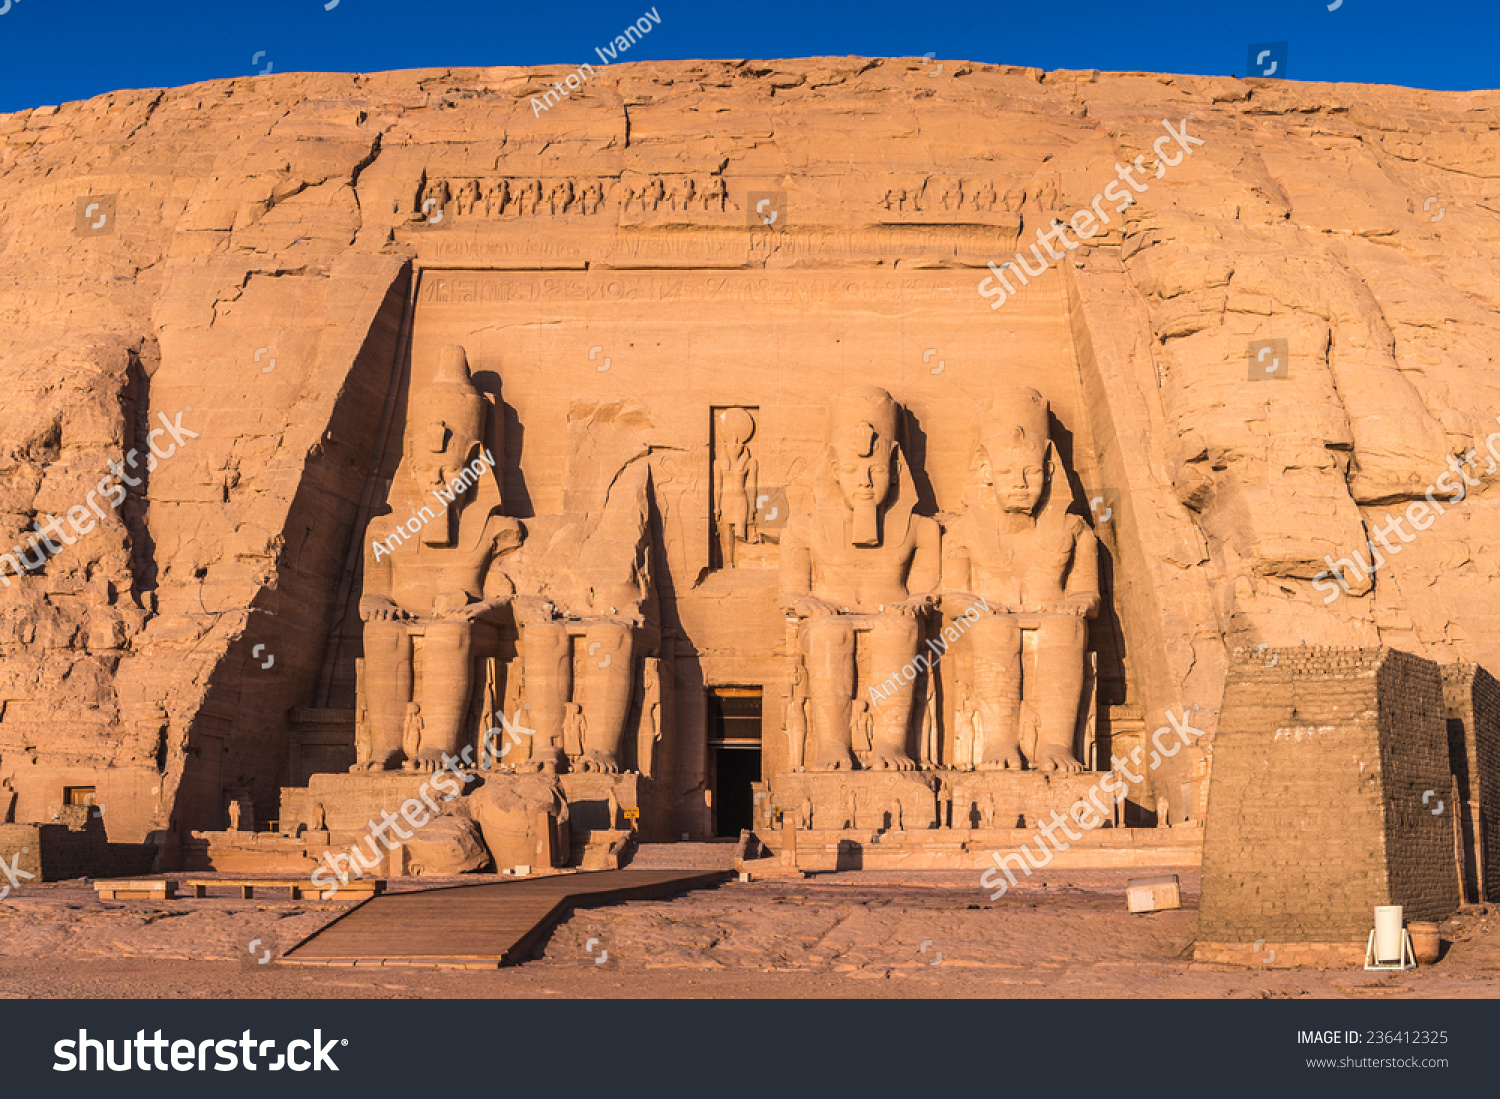 Abu Simbel temples on sunrise, Abu Simbel, Egypt. UNESCO World Heritage #236412325